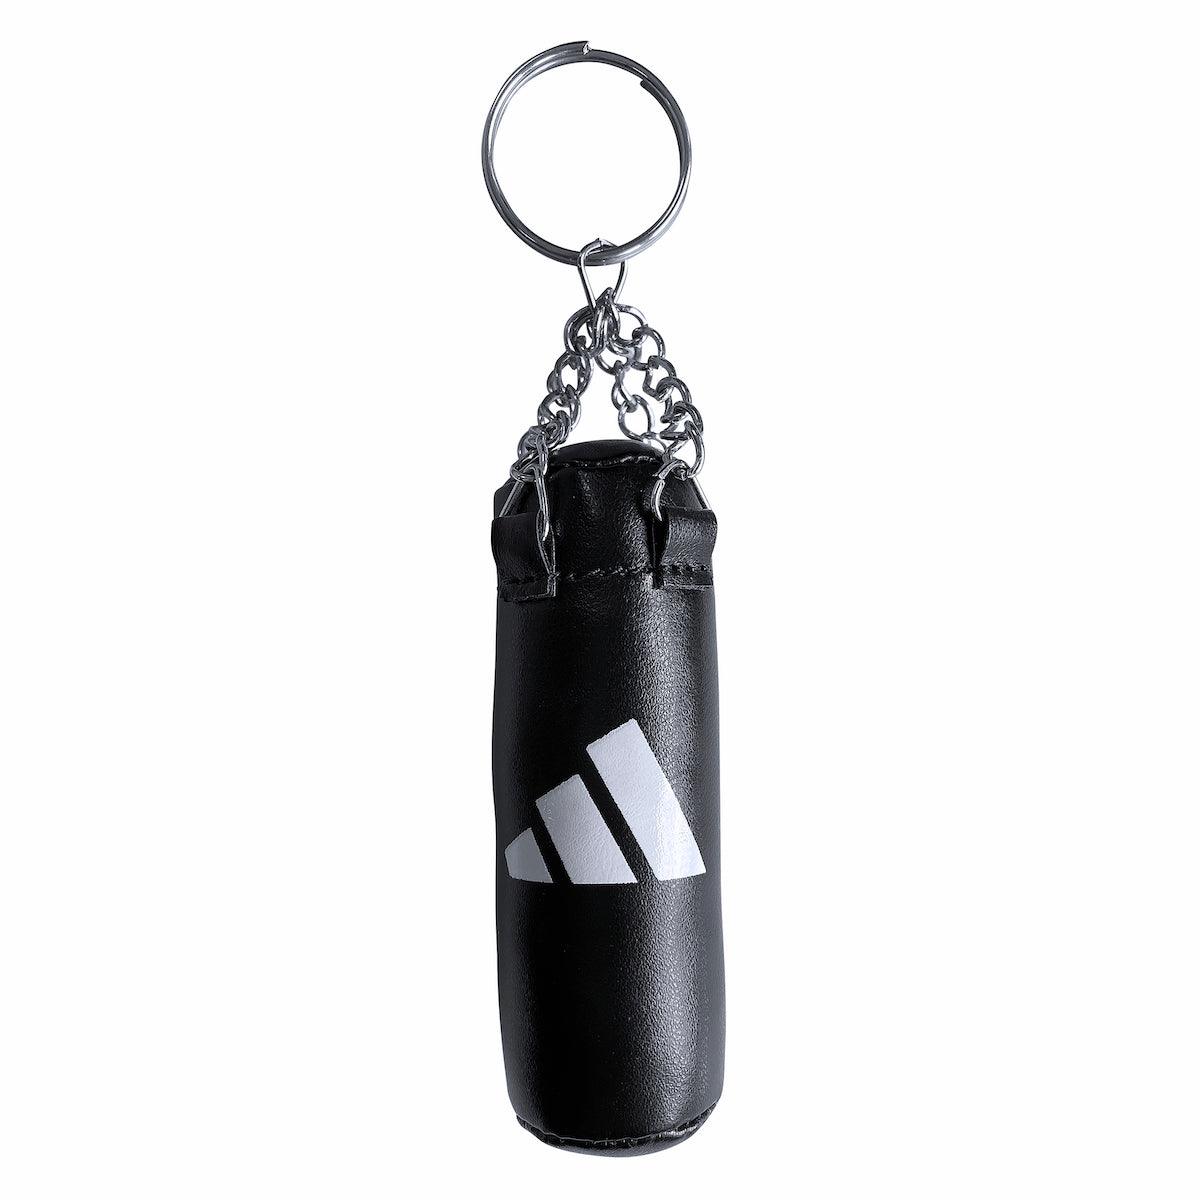 Porte-clés mini Sac de Frappe Adidas (ADIGA02) - Noir